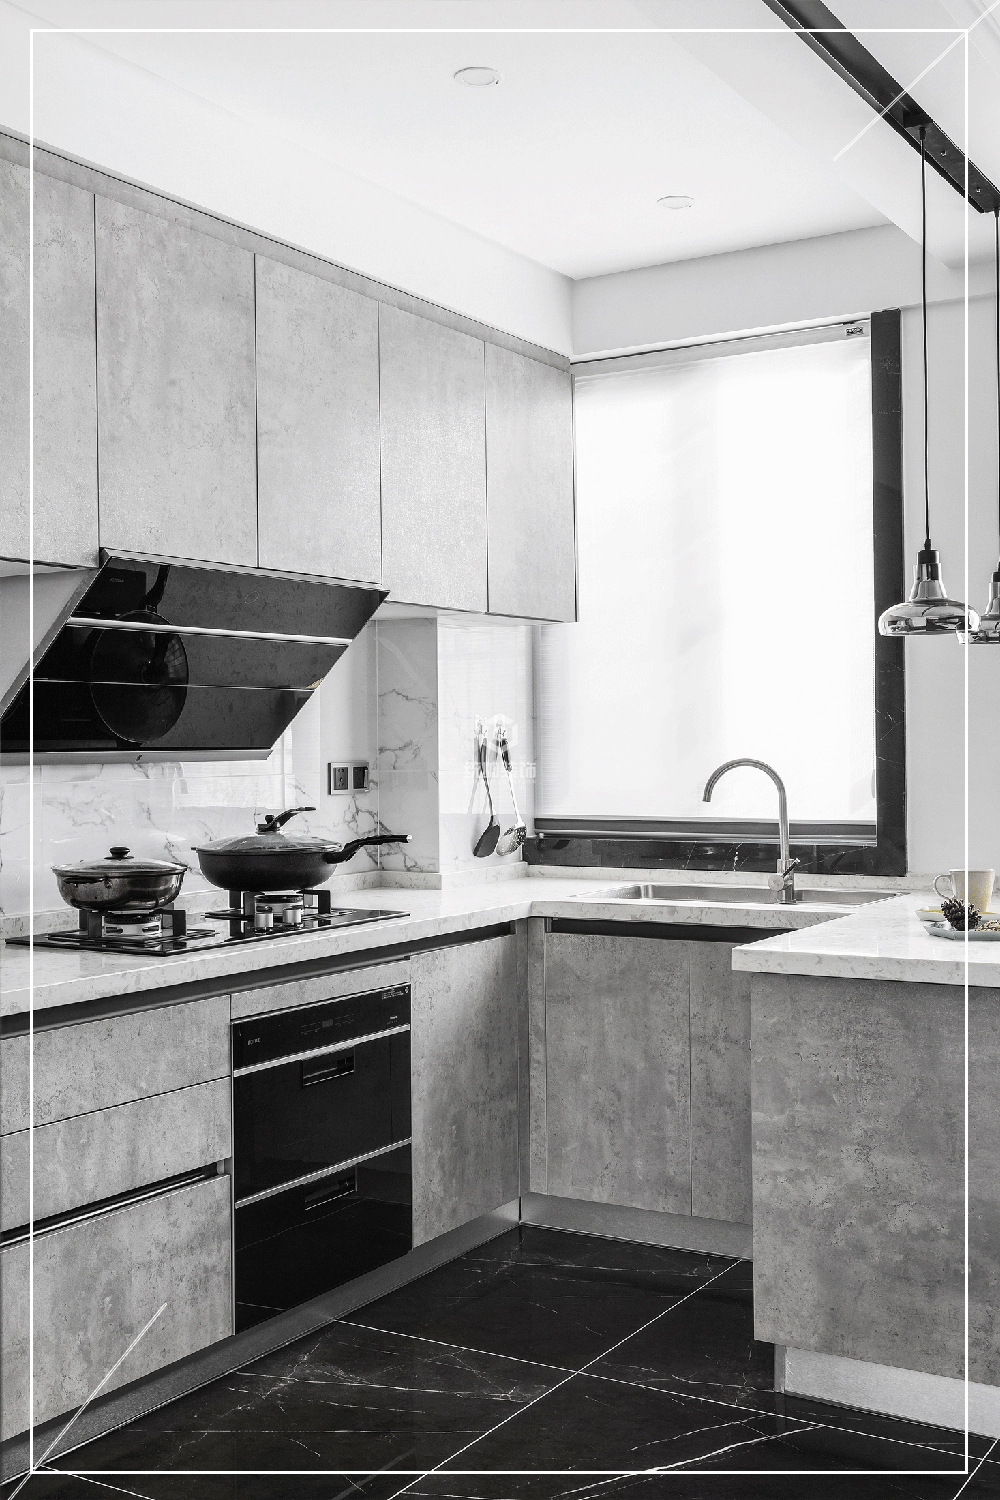 嘉定区墨·意180平方现代简约风格别墅厨房装修效果图